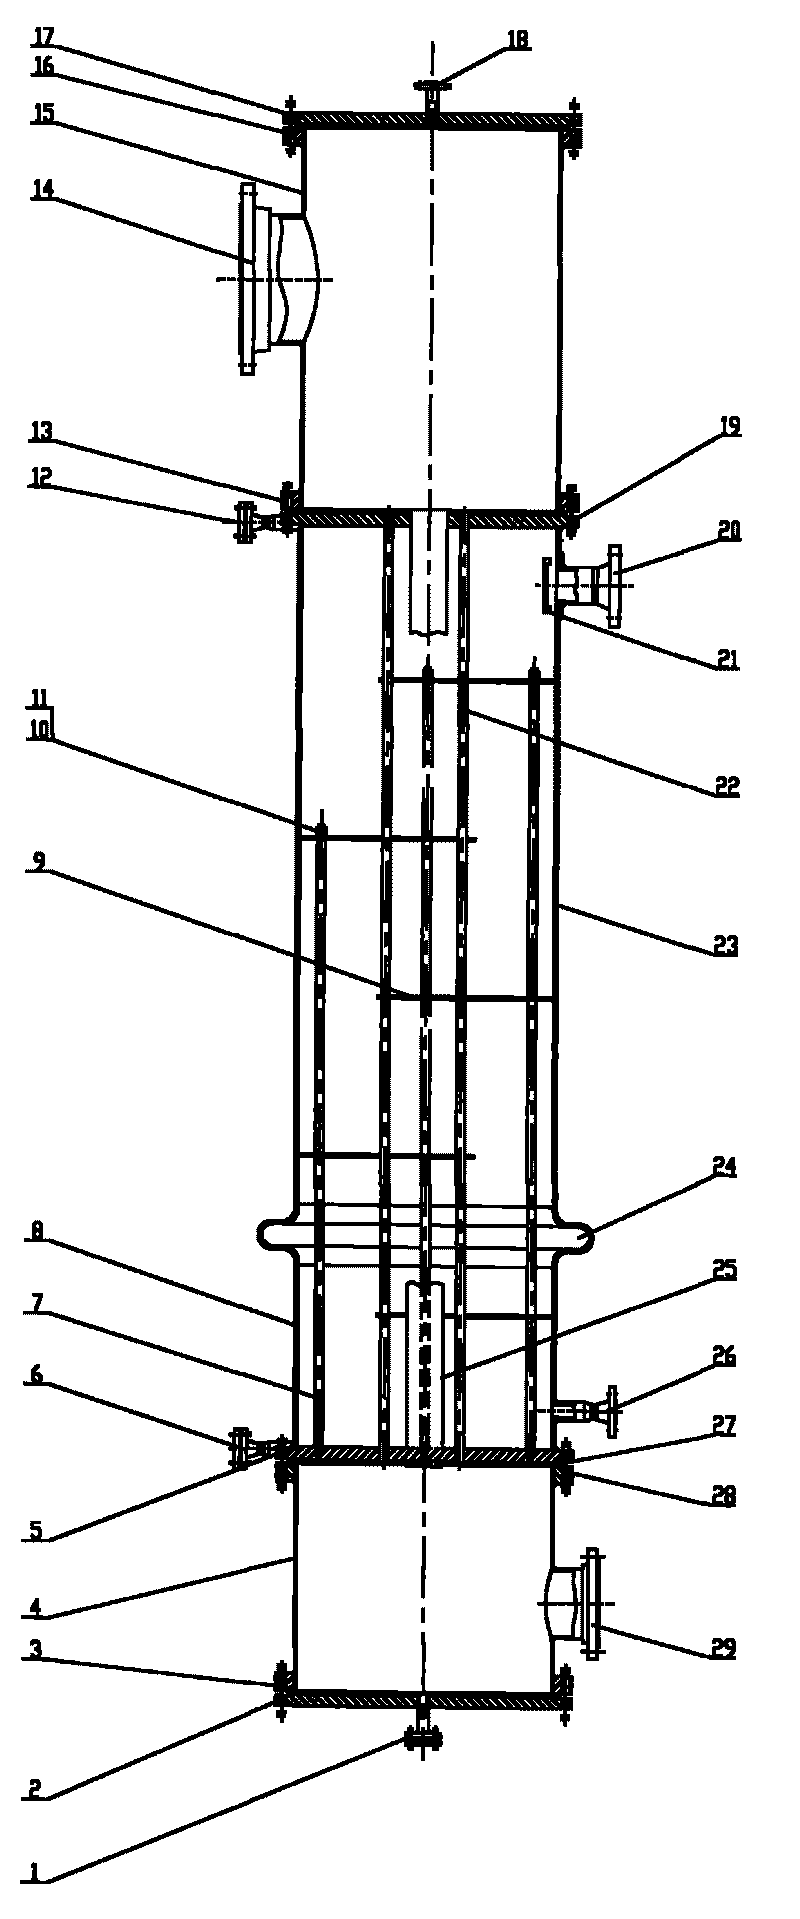 Heat exchanger for distillation